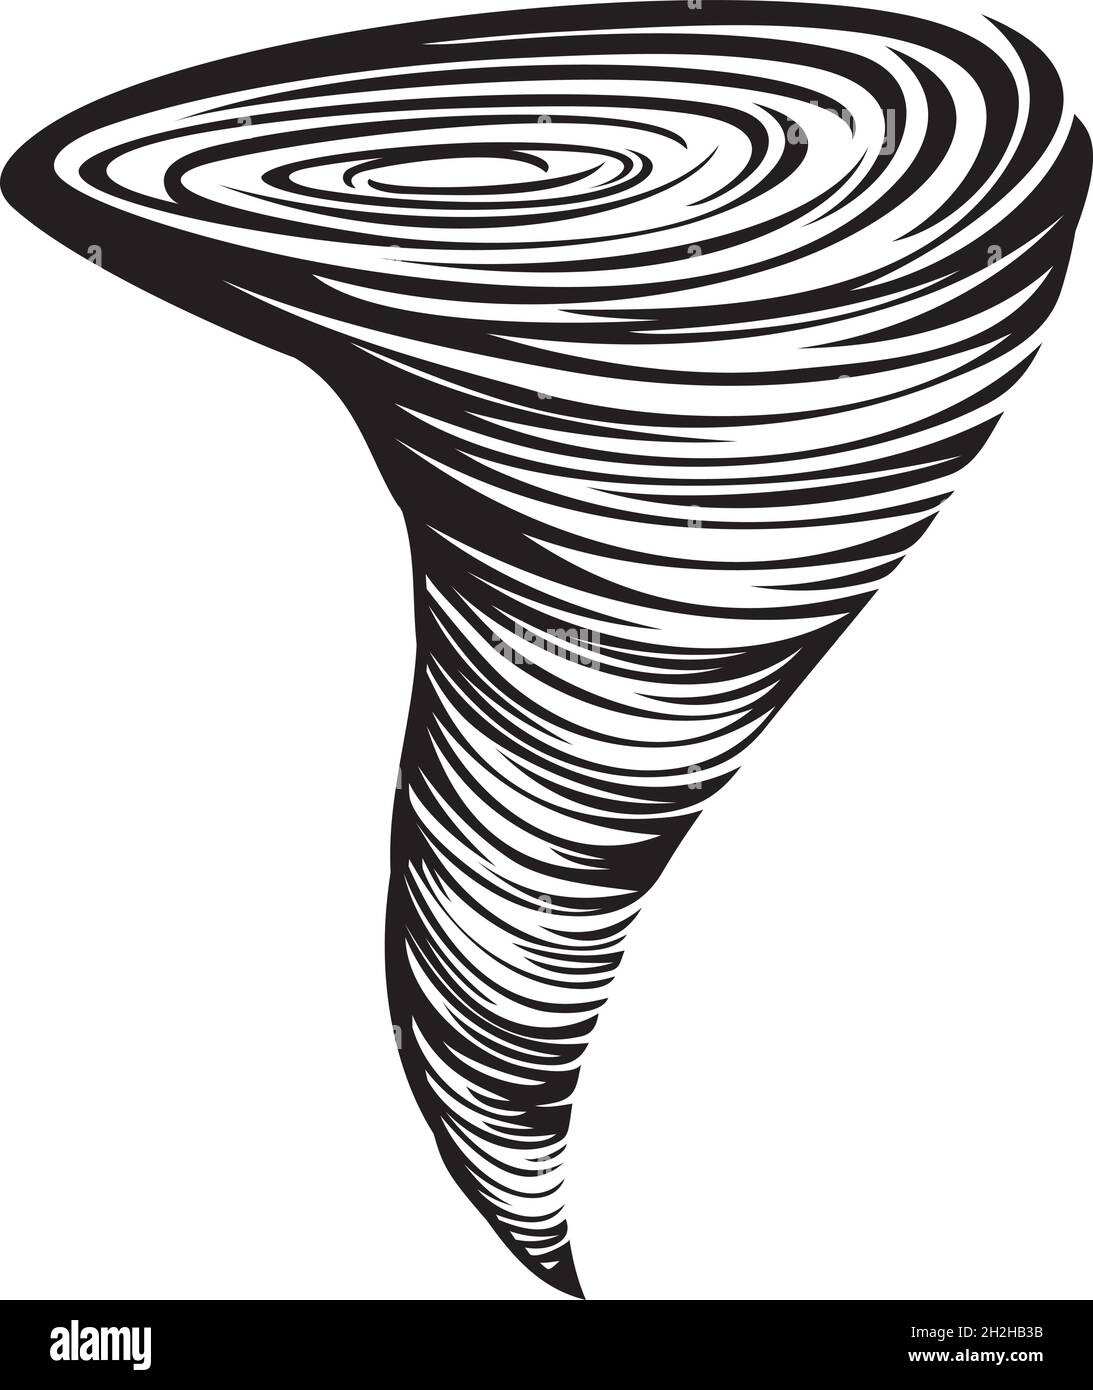 Illustrazione vettoriale di Tornado Illustrazione Vettoriale